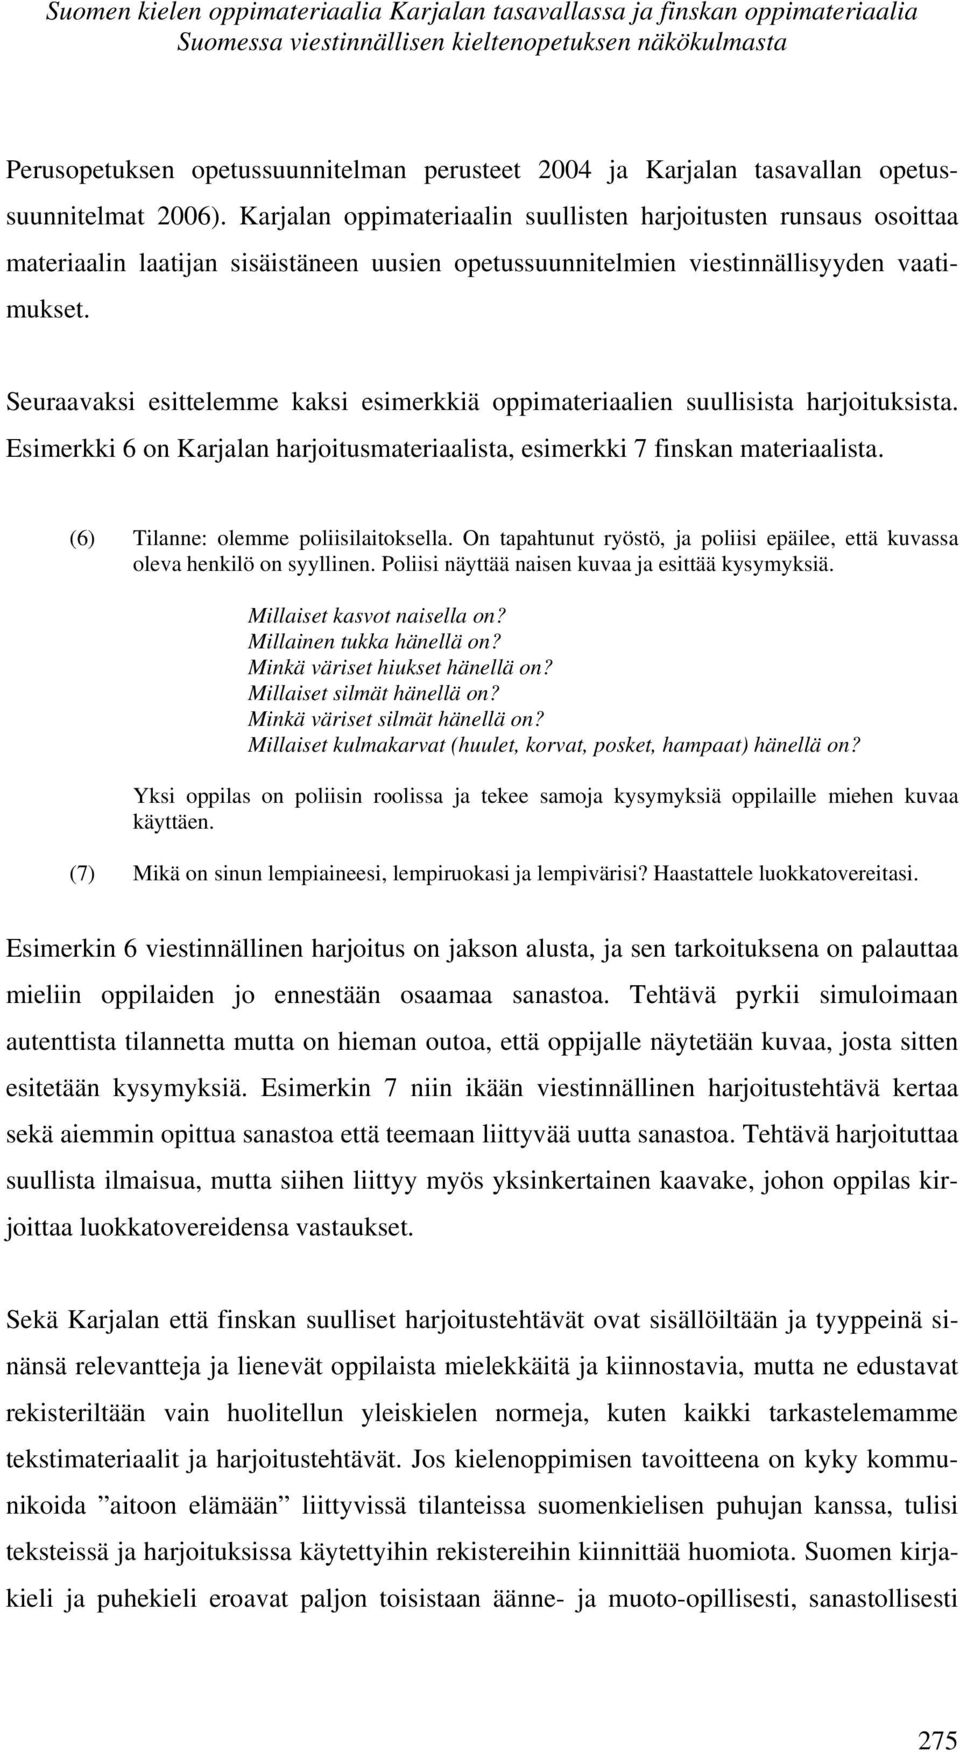 Seuraavaksi esittelemme kaksi esimerkkiä oppimateriaalien suullisista harjoituksista. Esimerkki 6 on Karjalan harjoitusmateriaalista, esimerkki 7 finskan materiaalista.